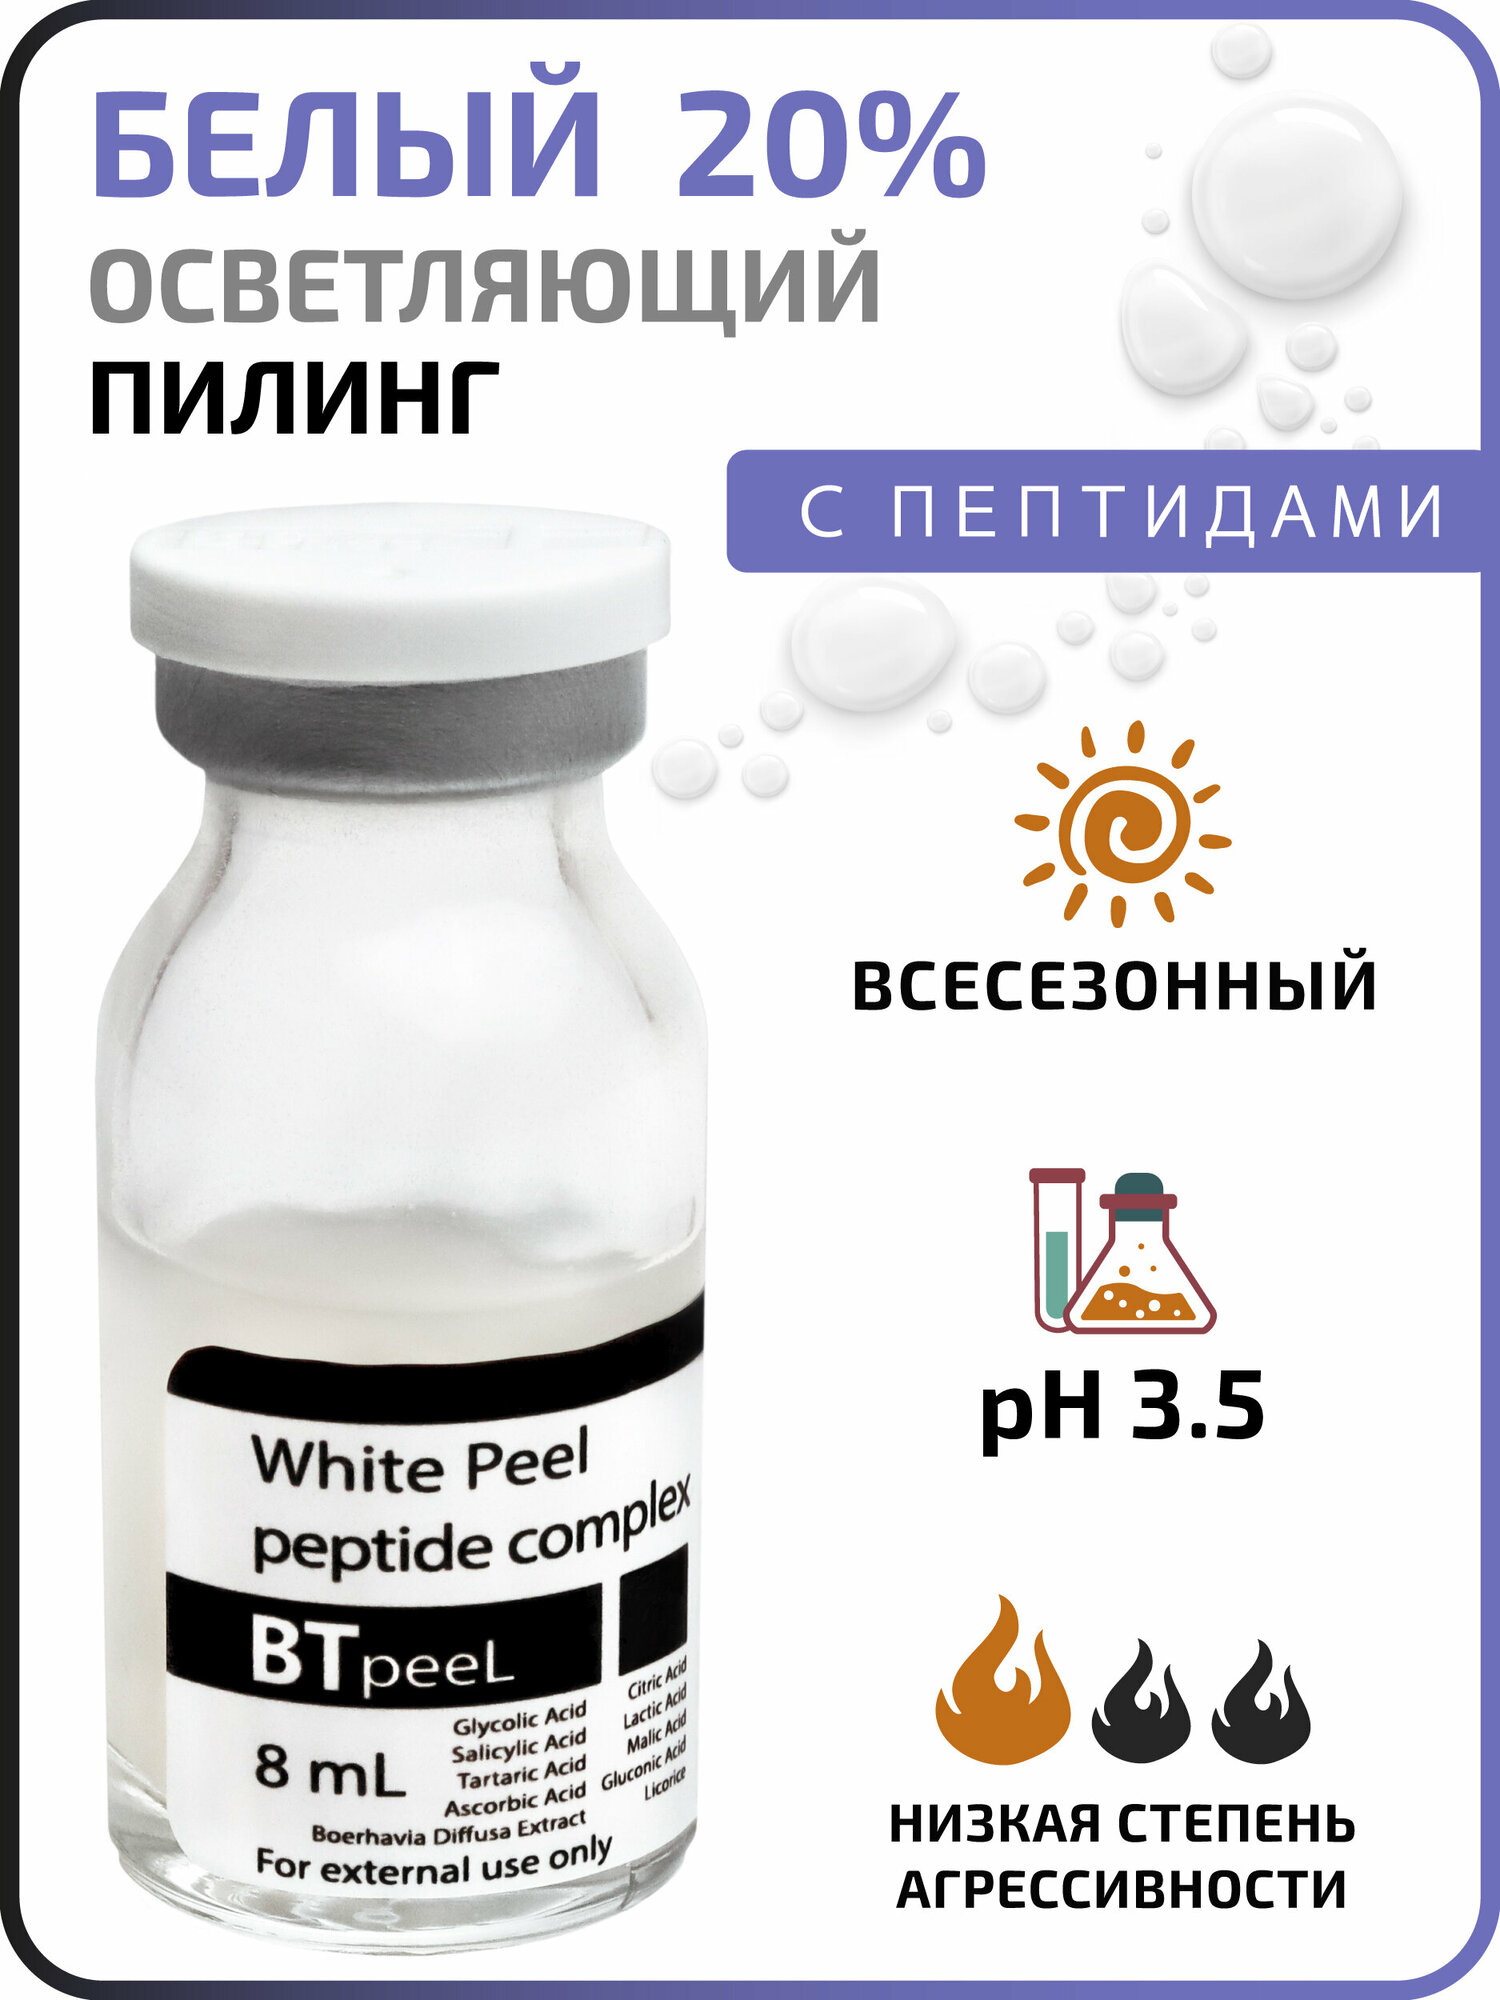 Белый пилинг осветляющий с пептидным комплексом и экстрактом пунарнавы White peeling BTpeeL, 8 мл